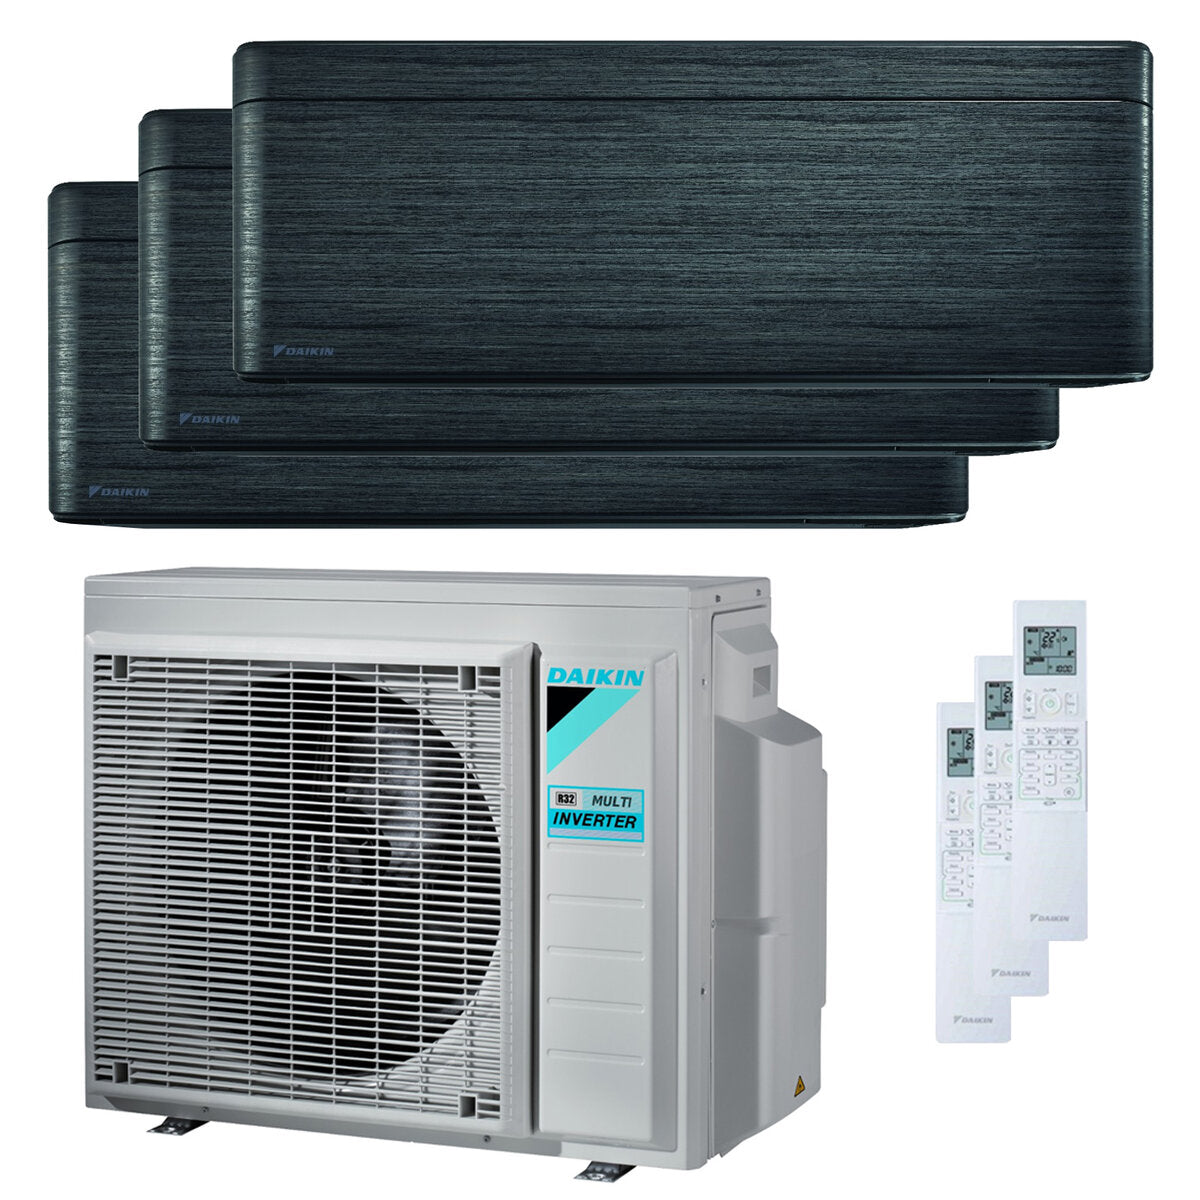 Daikin Stylish Trial Split Klimaanlage 7000 + 7000 + 9000 BTU Inverter A +++ WLAN Außengerät 5,2 kW